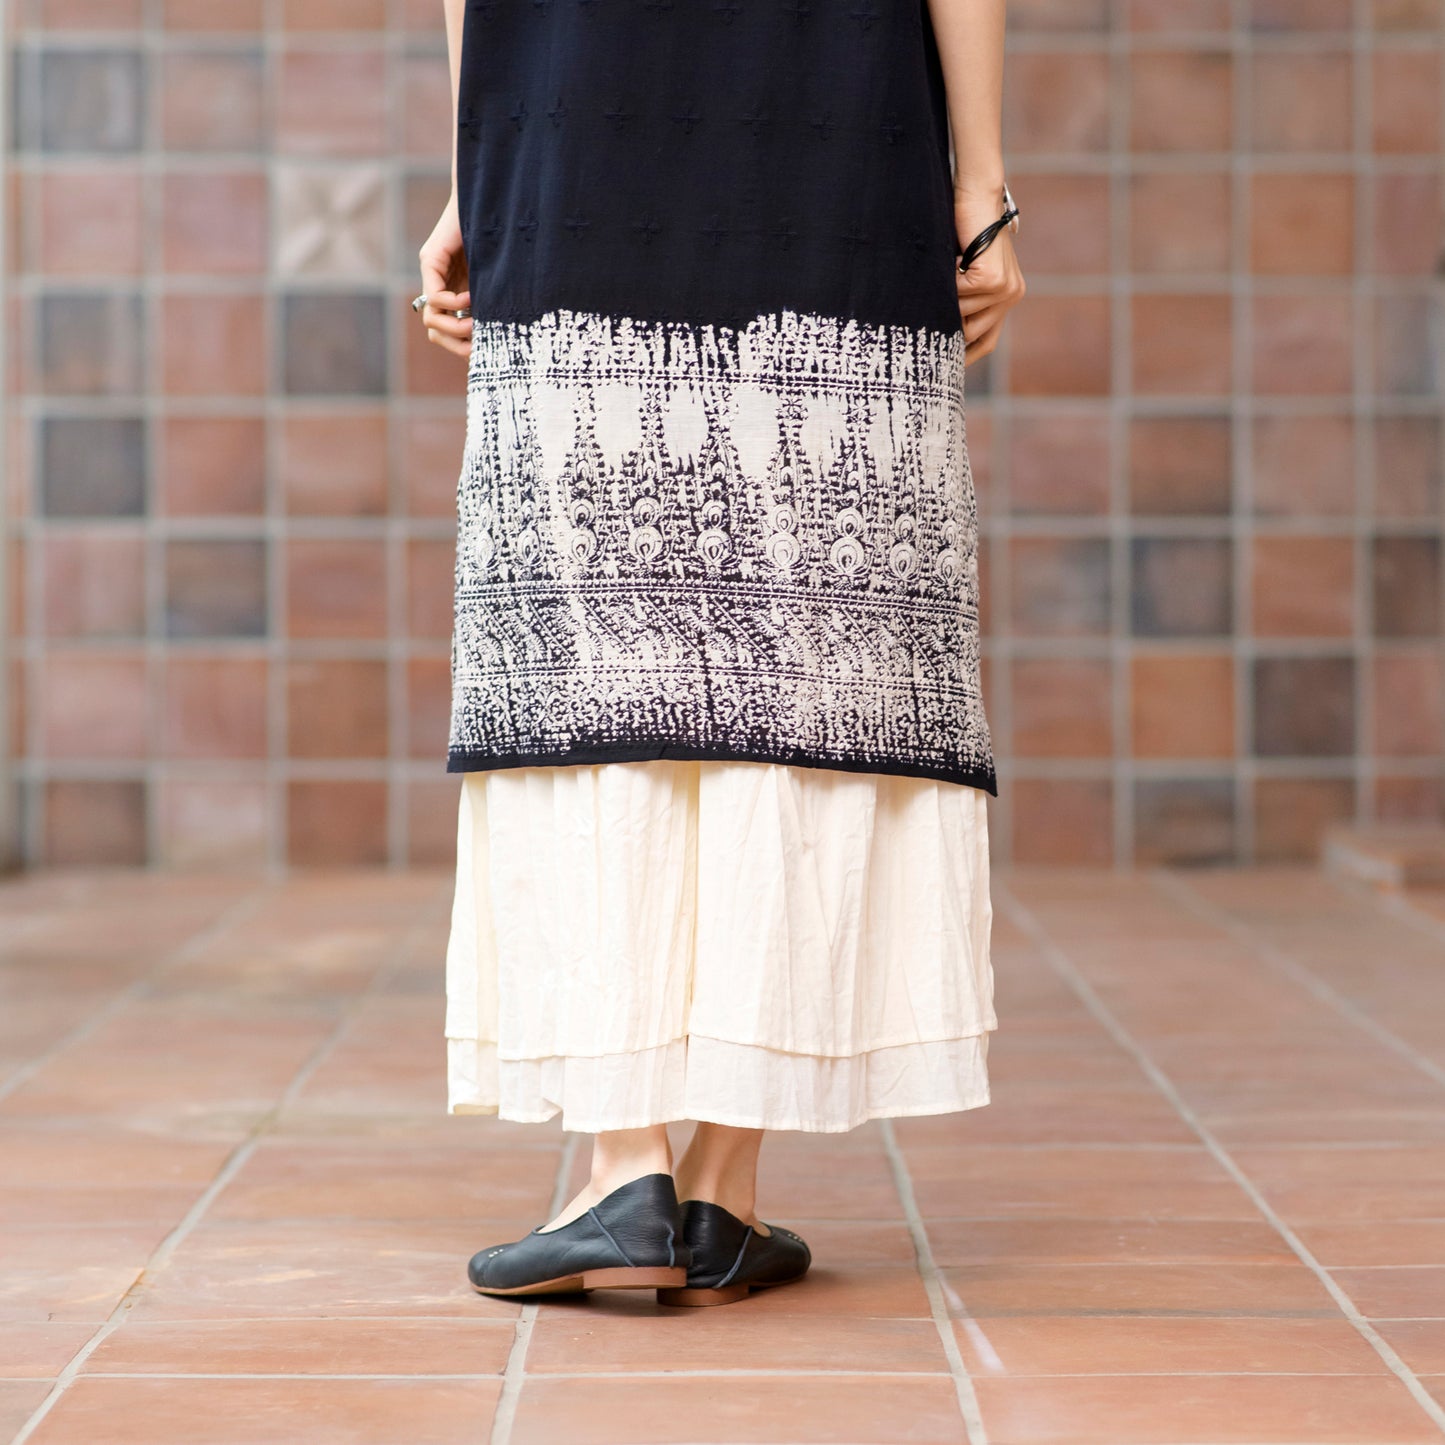 Ärmelloses Kleid aus Baumwolle mit Stickerei und zweifarbigem Druck